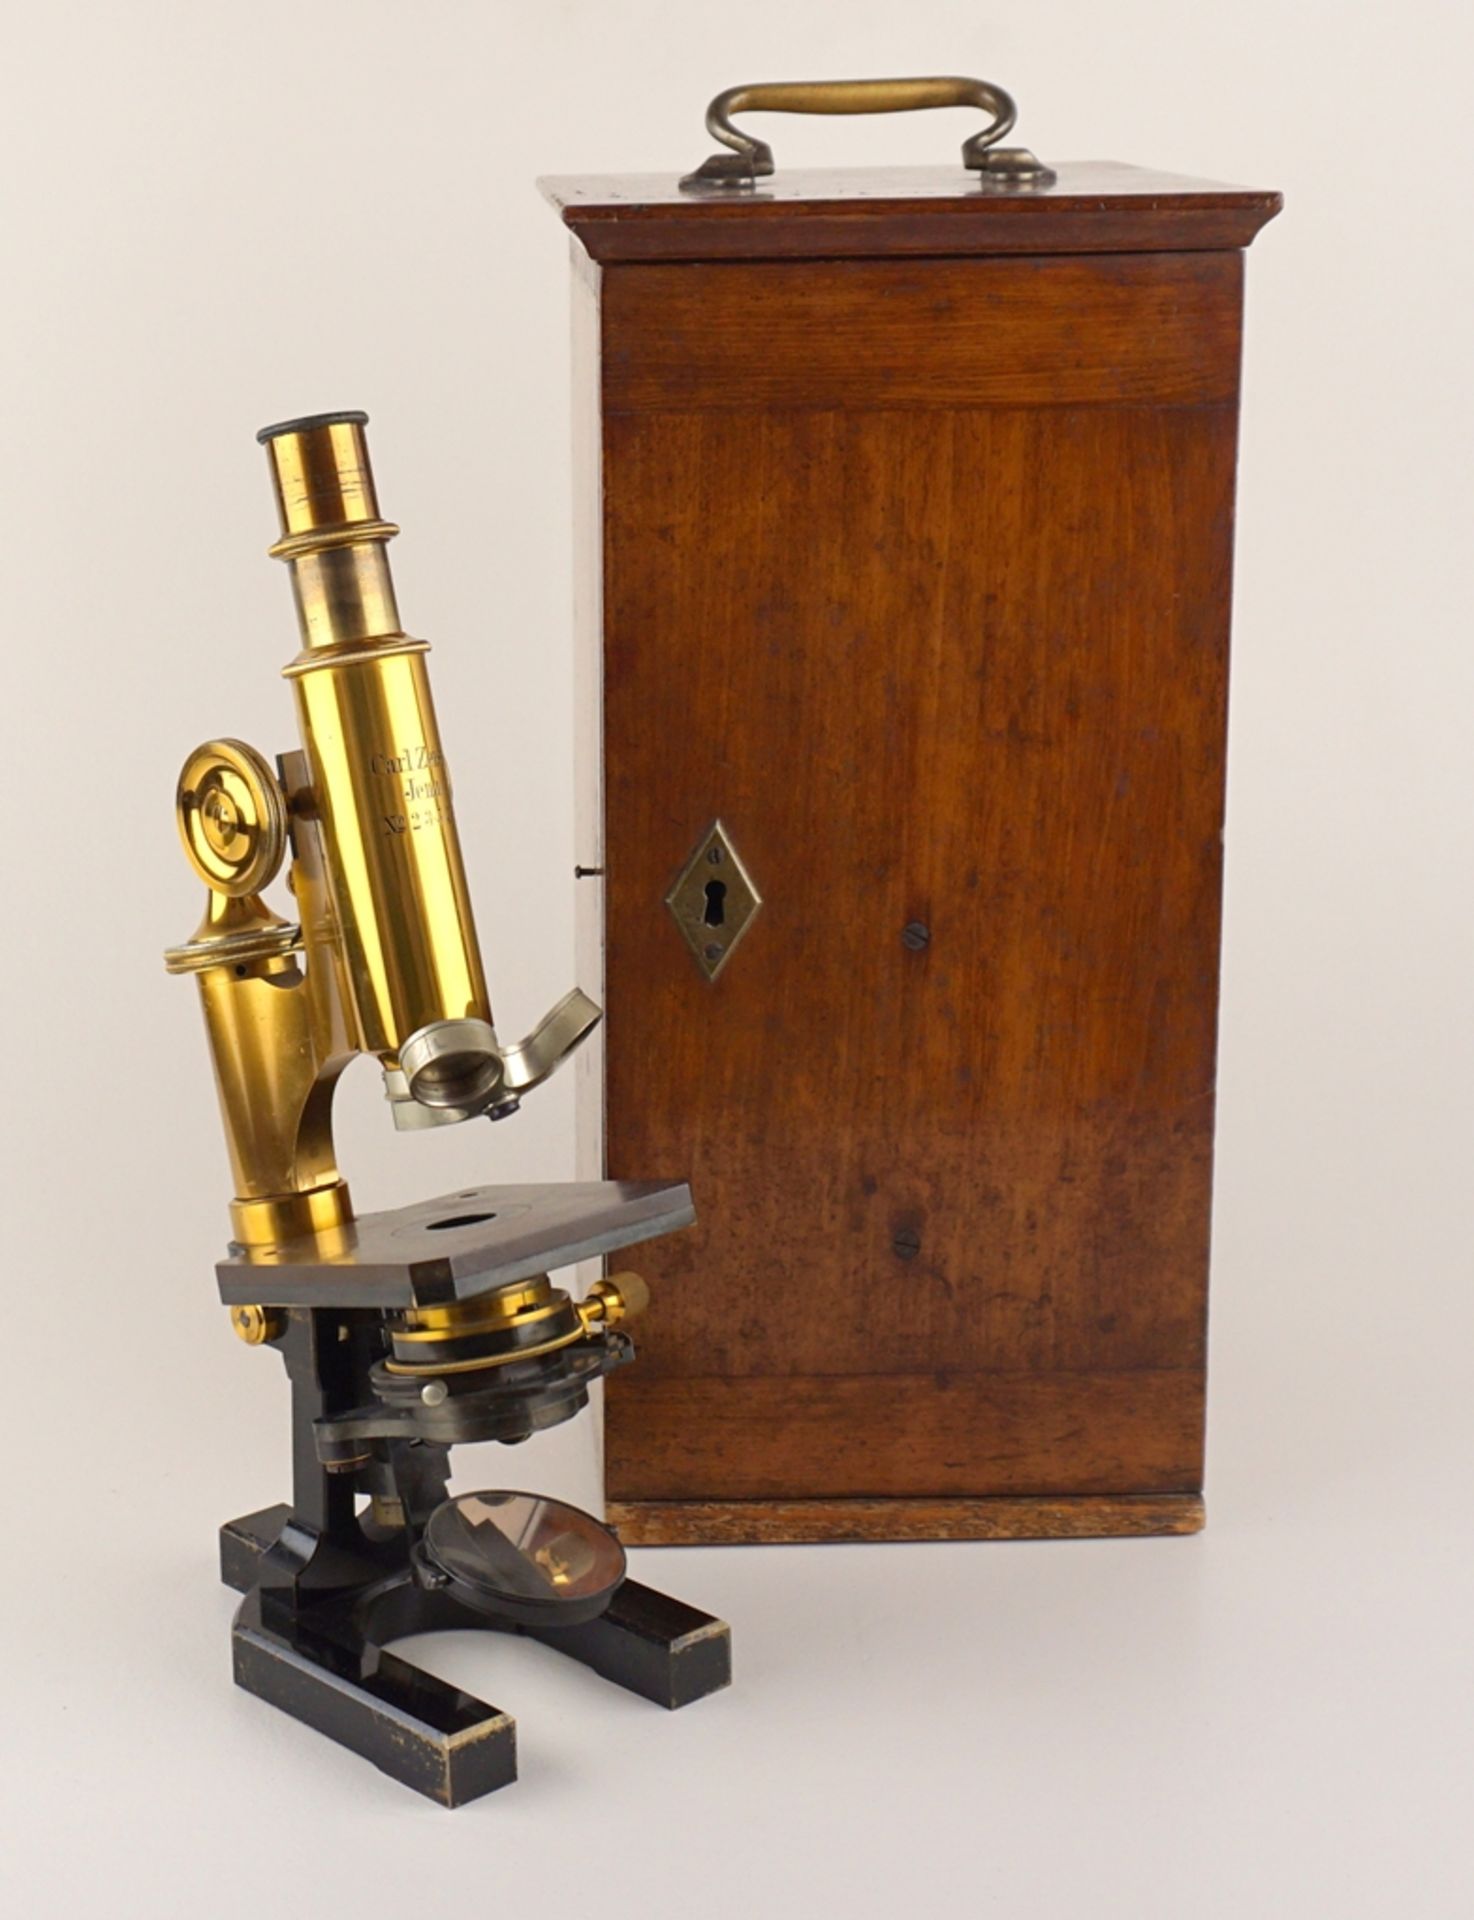 Mikroskop, Carl Zeiss, Jena, um 1890